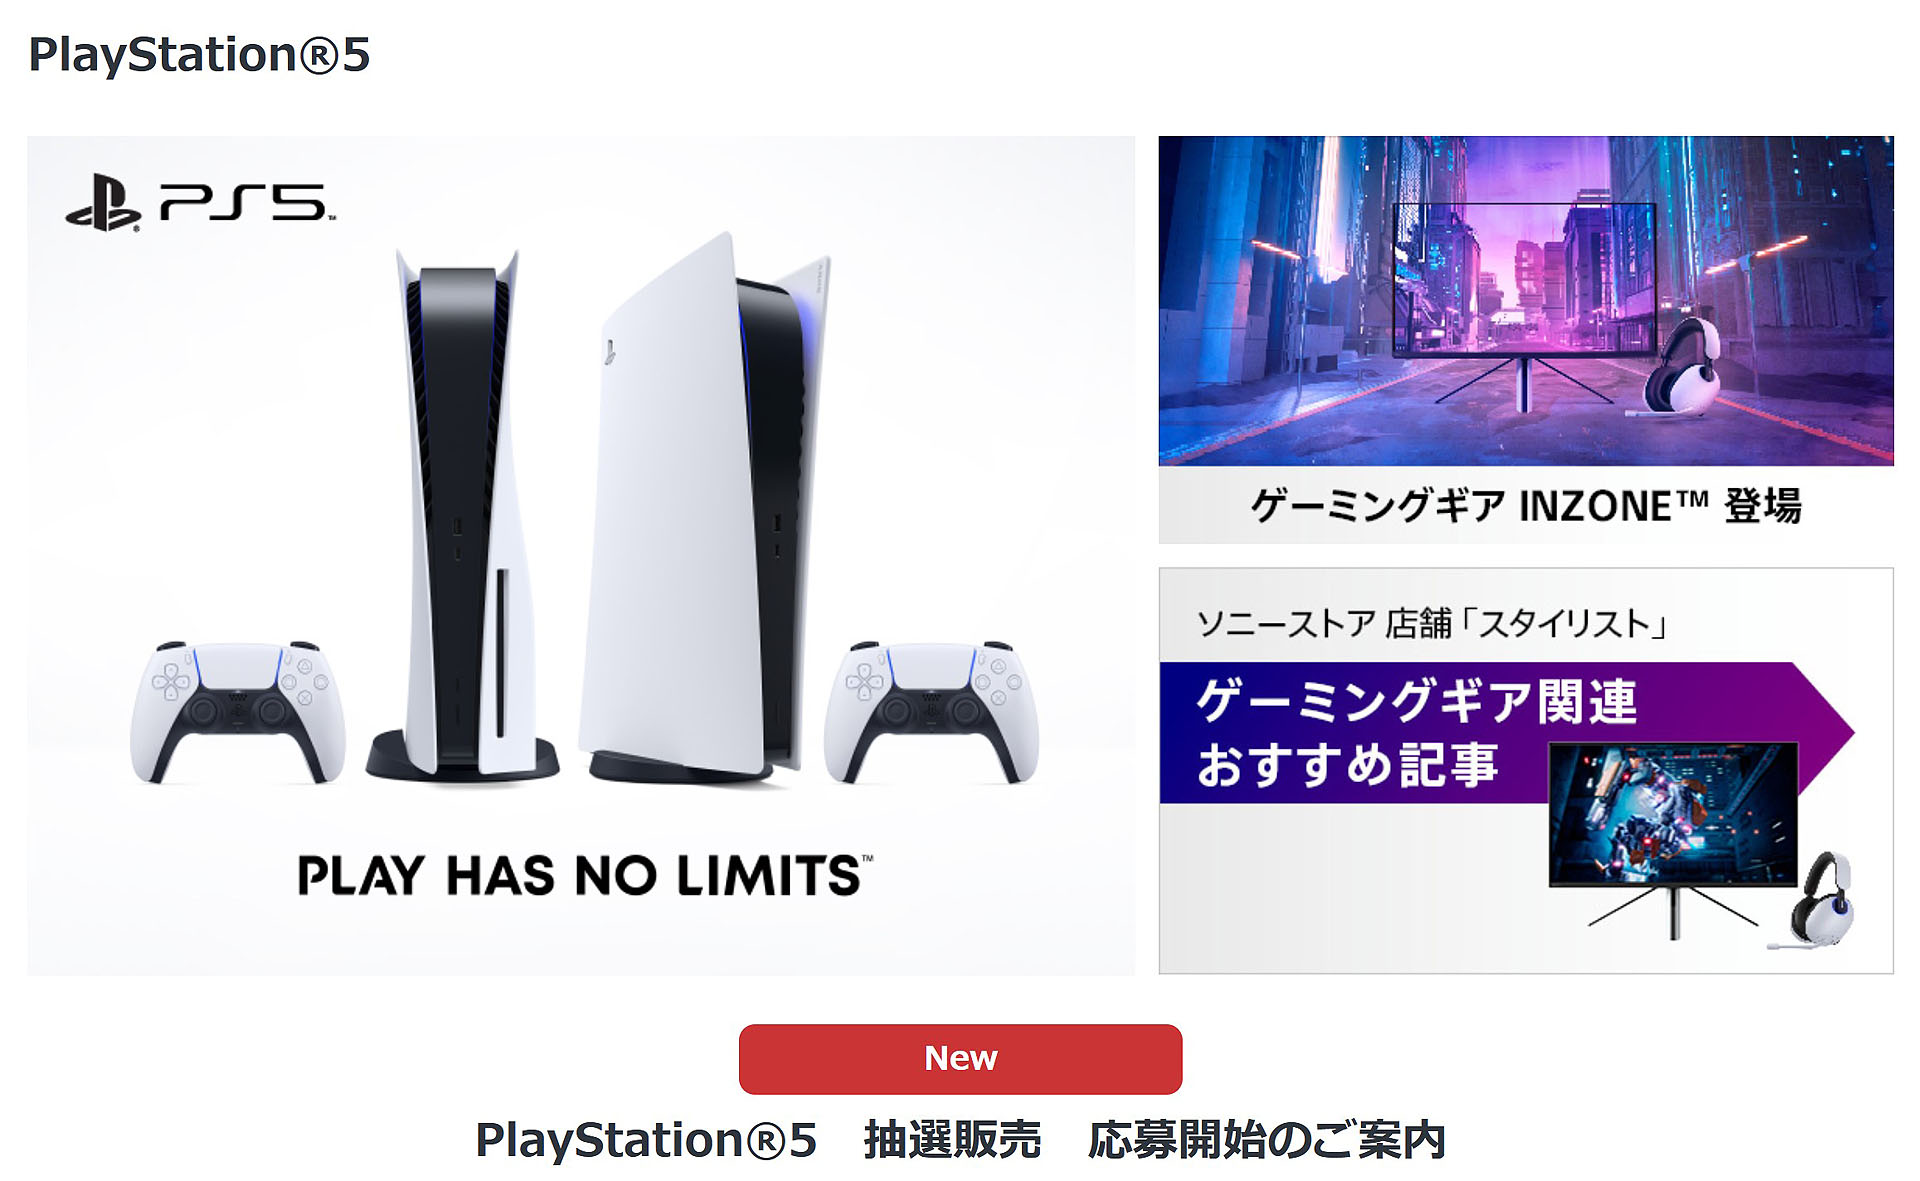 ソニーストアにて『PlayStation 5 抽選販売』の応募開始！抽選申し込み期間は9月20日(金)午前11時まで！値上げ前の価格で購入できる大チャンス！